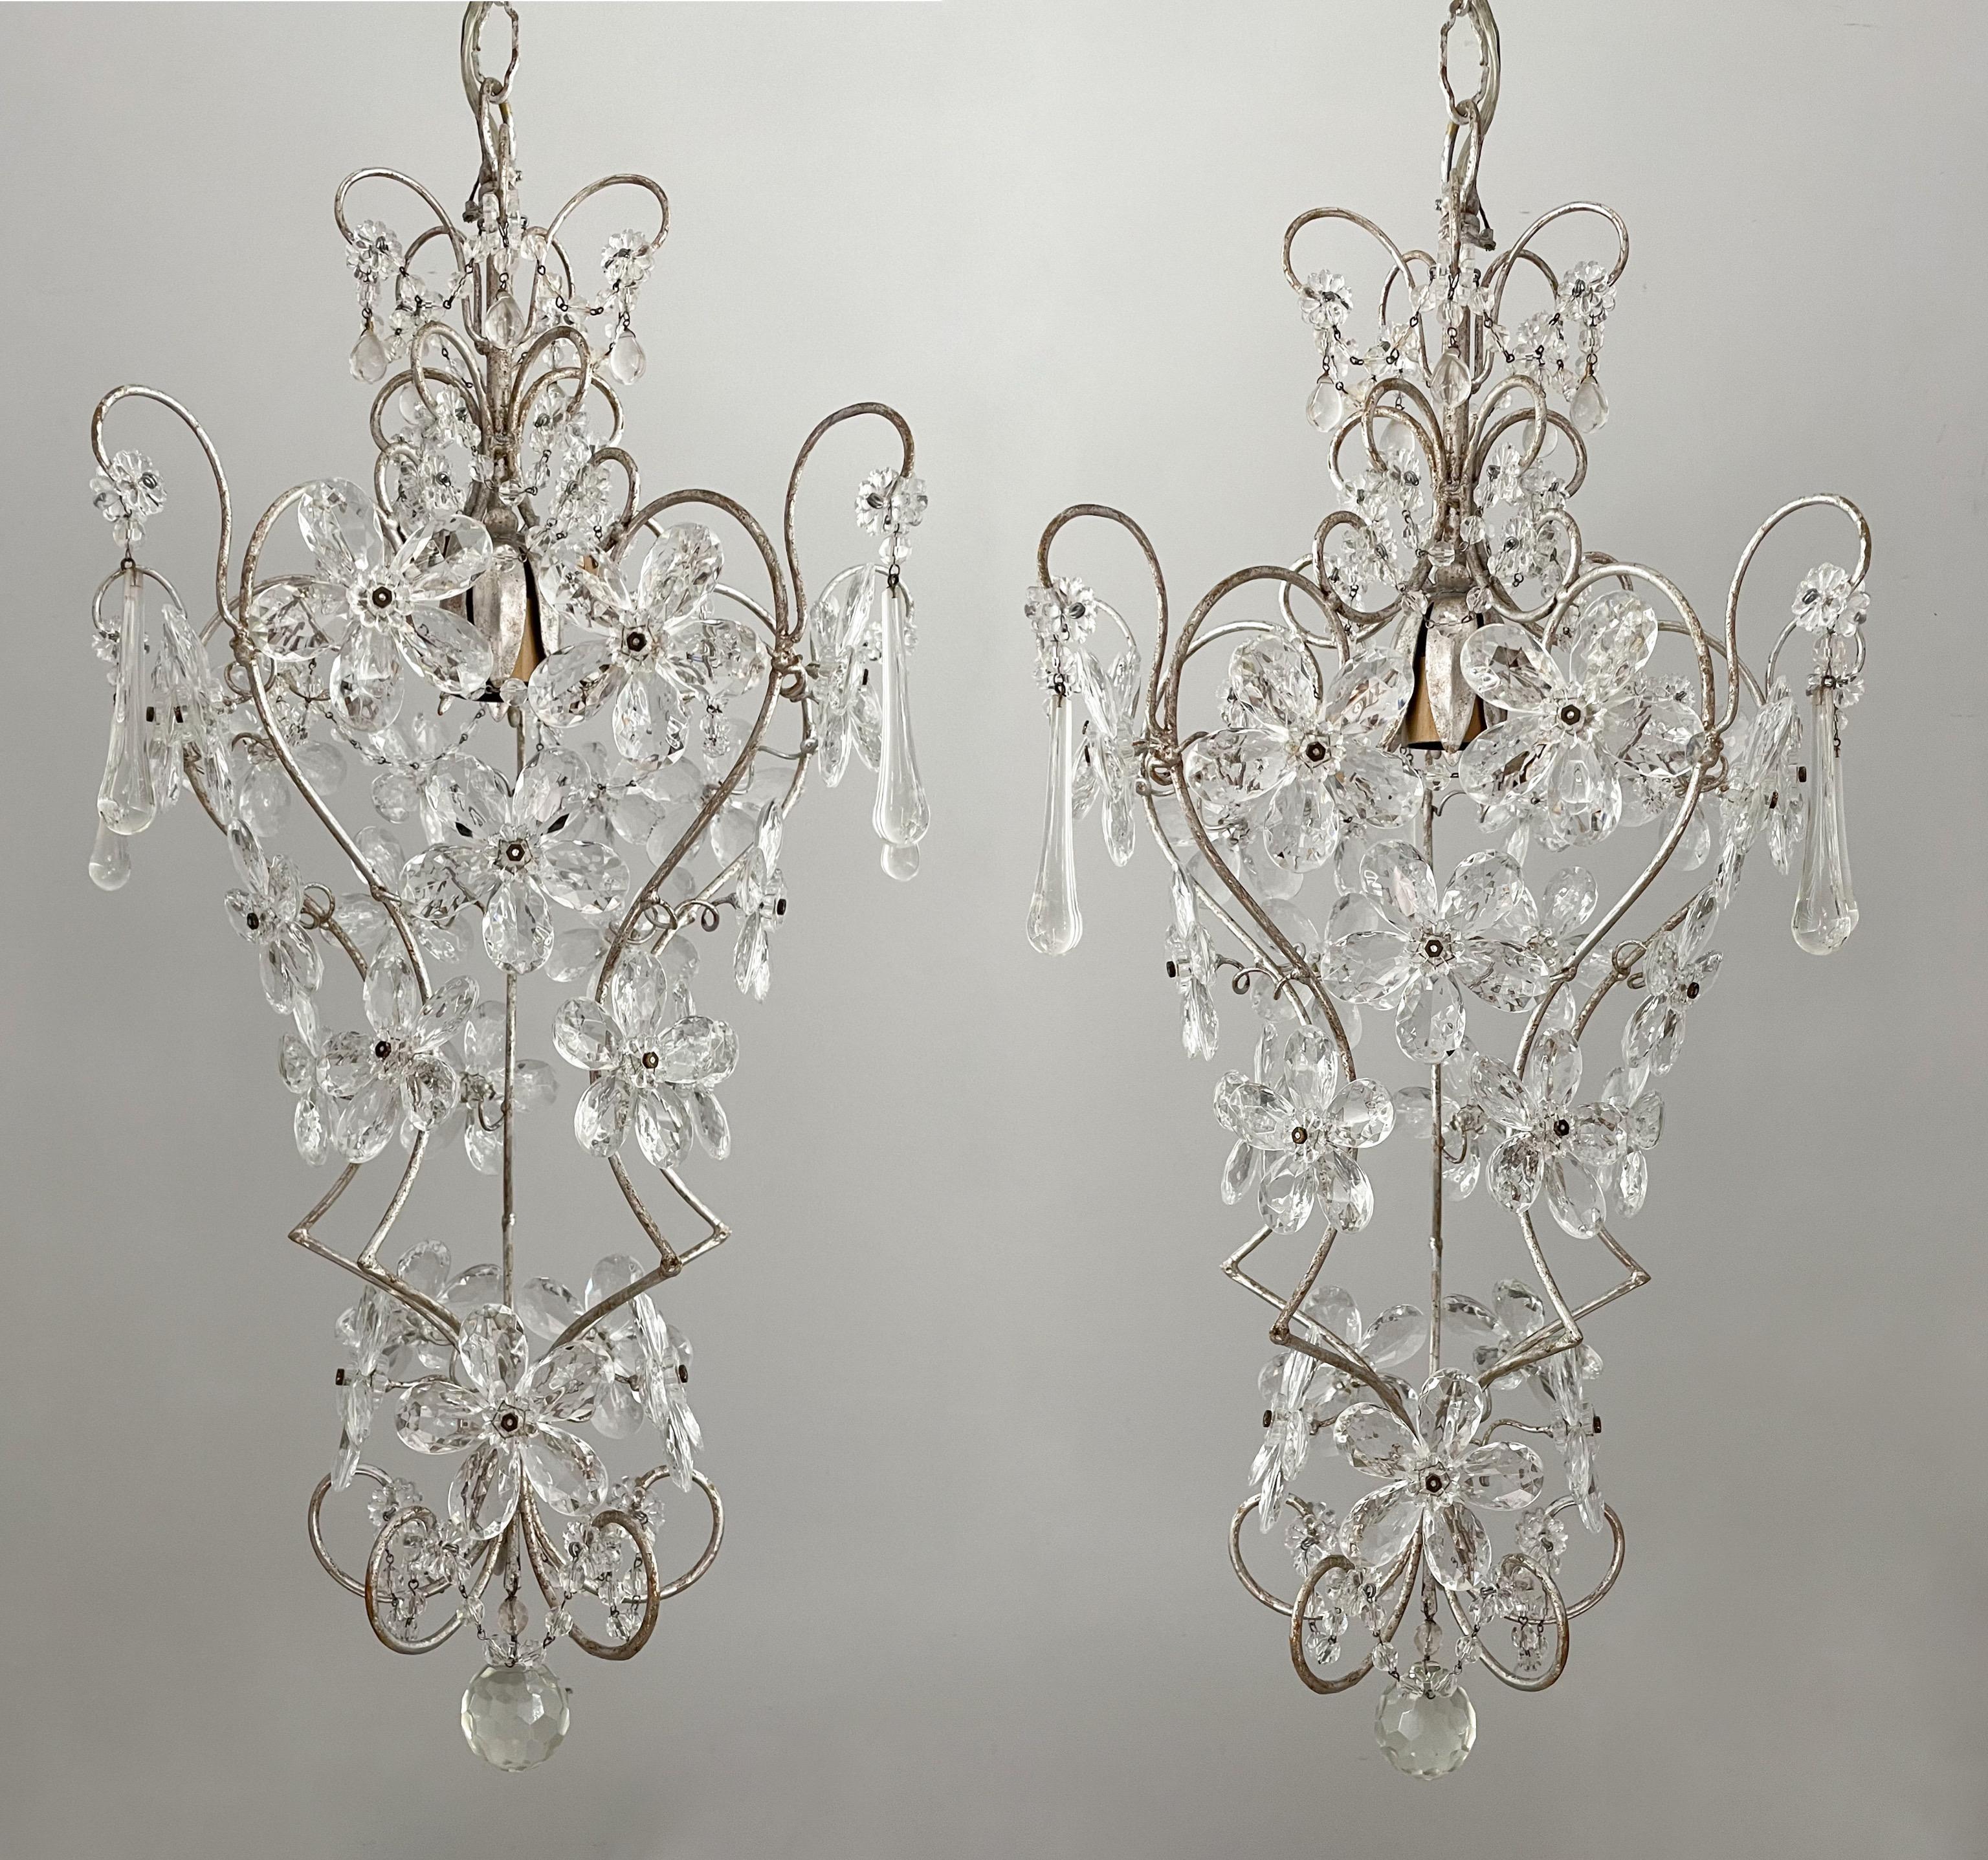 Magnifique paire de lustres italiens des années 1960 en fer et cristal perlé.

Chaque lustre se compose d'un cadre en fer à volutes, d'une finition à la feuille d'argent appliquée à la main et de fleurs faites de prismes de cristal à facettes. 

Les